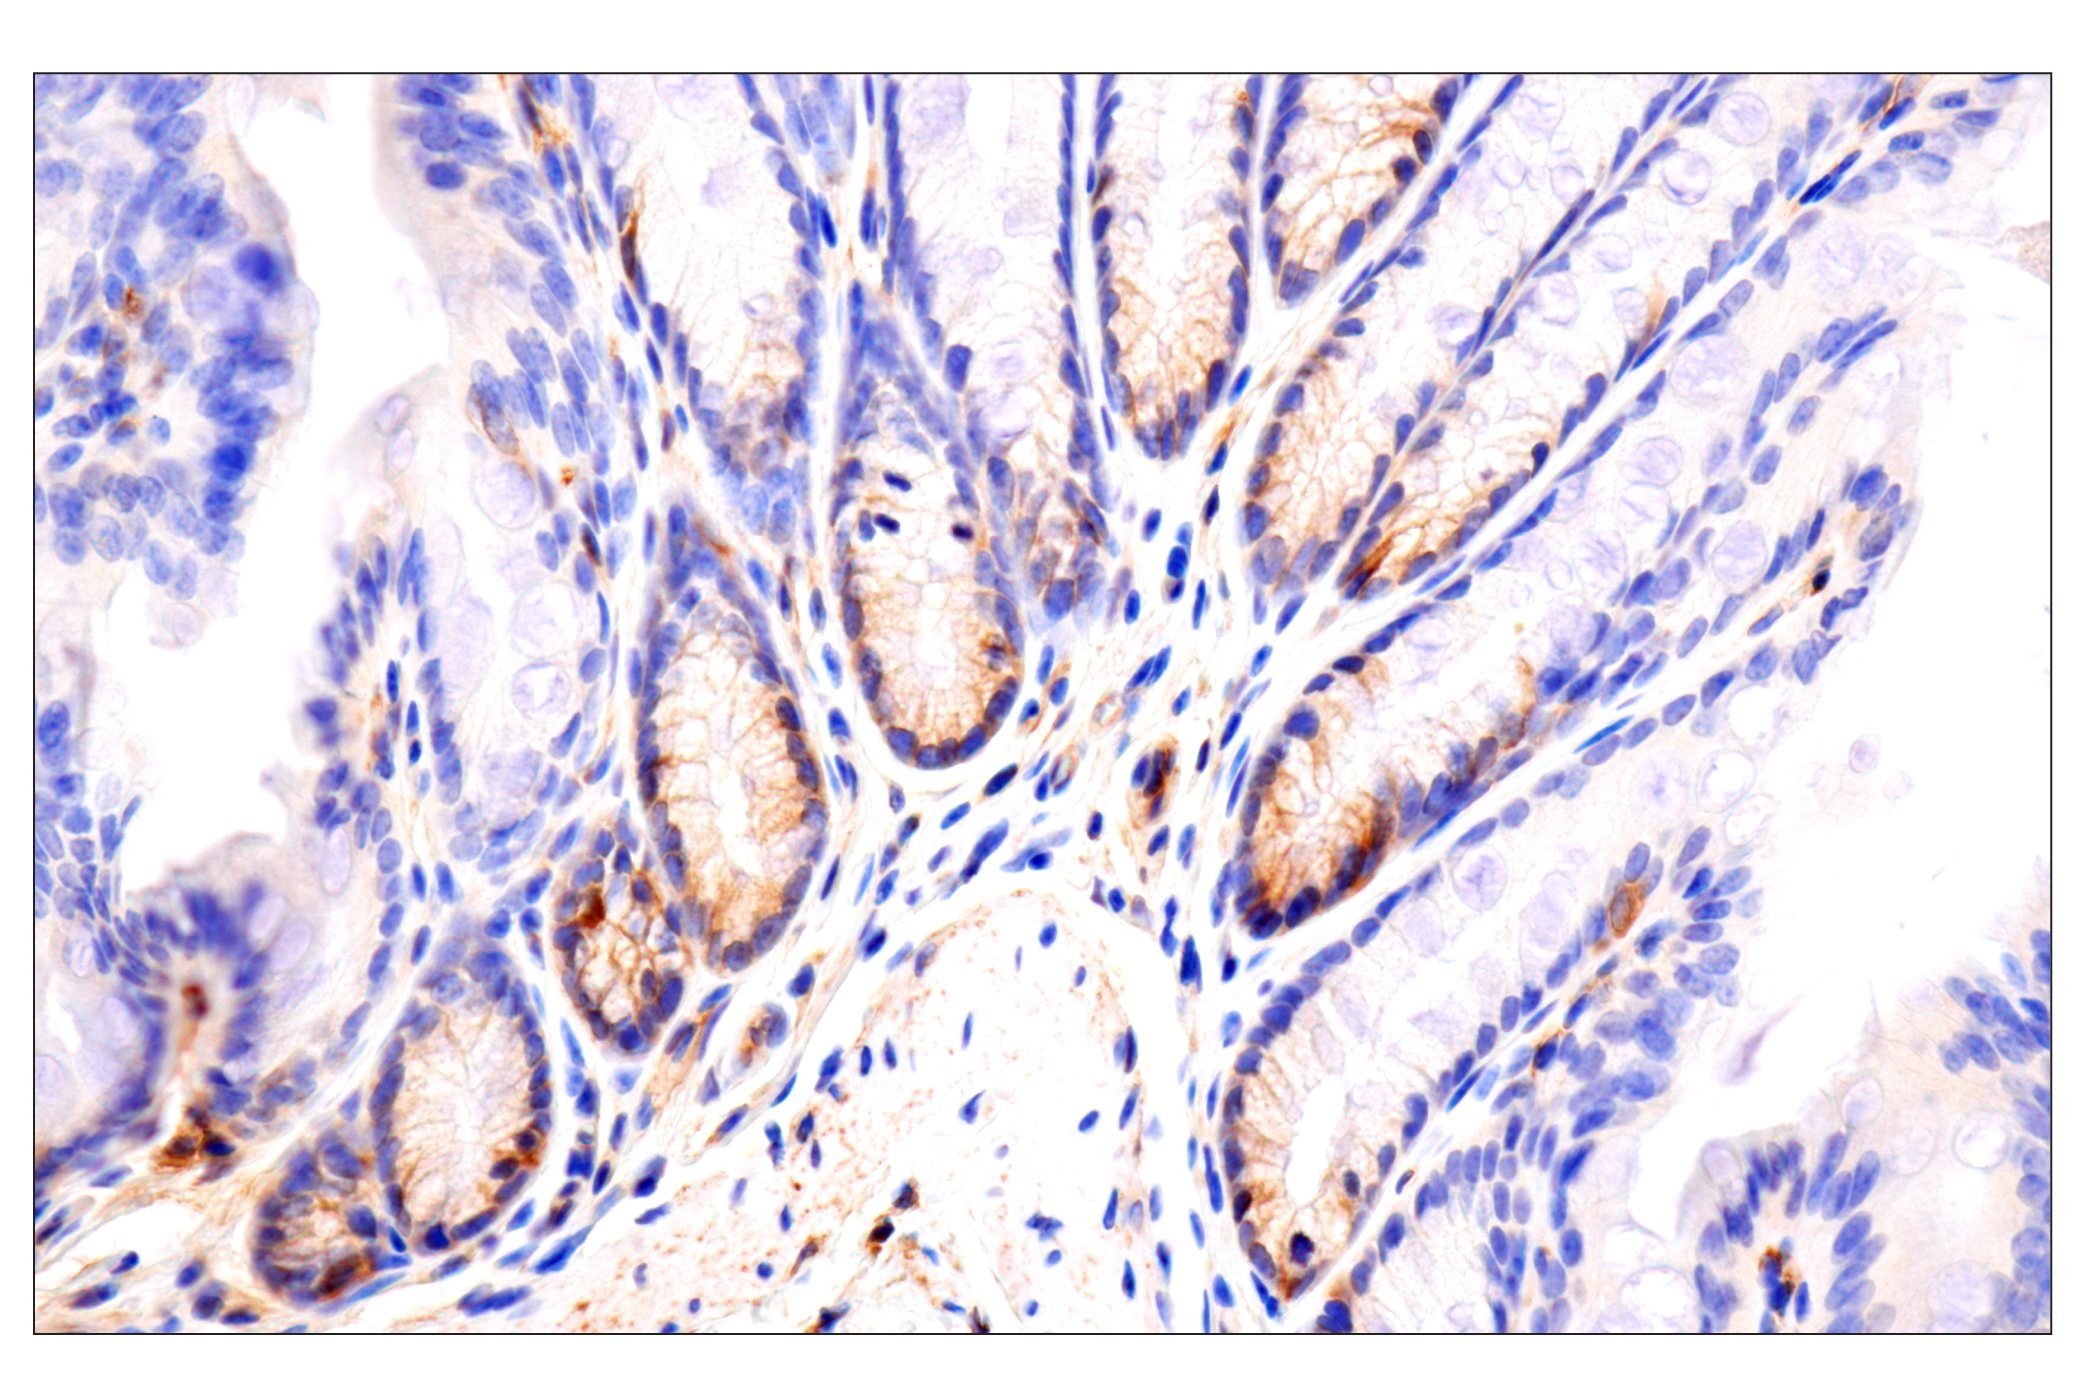  Image 34: Mouse Reactive Exosome Marker Antibody Sampler Kit